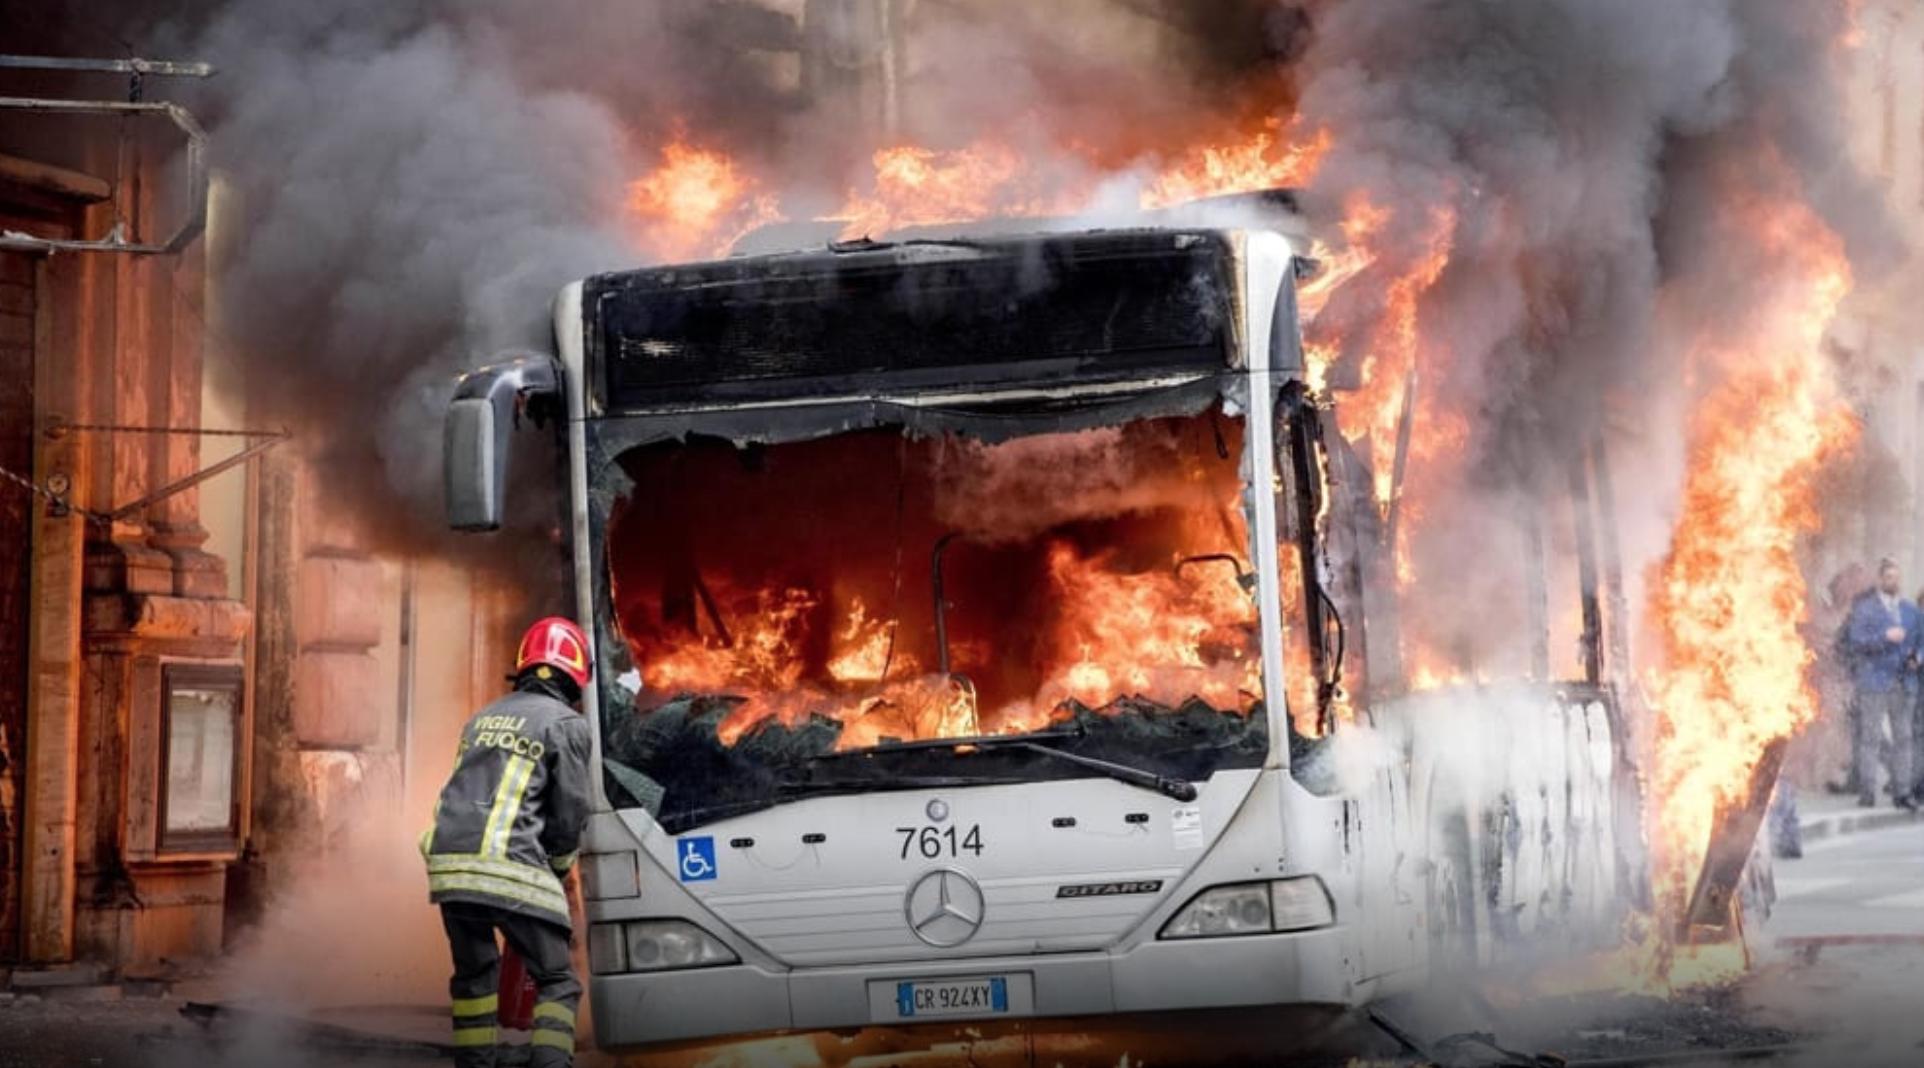 Atac autobus in fiamme